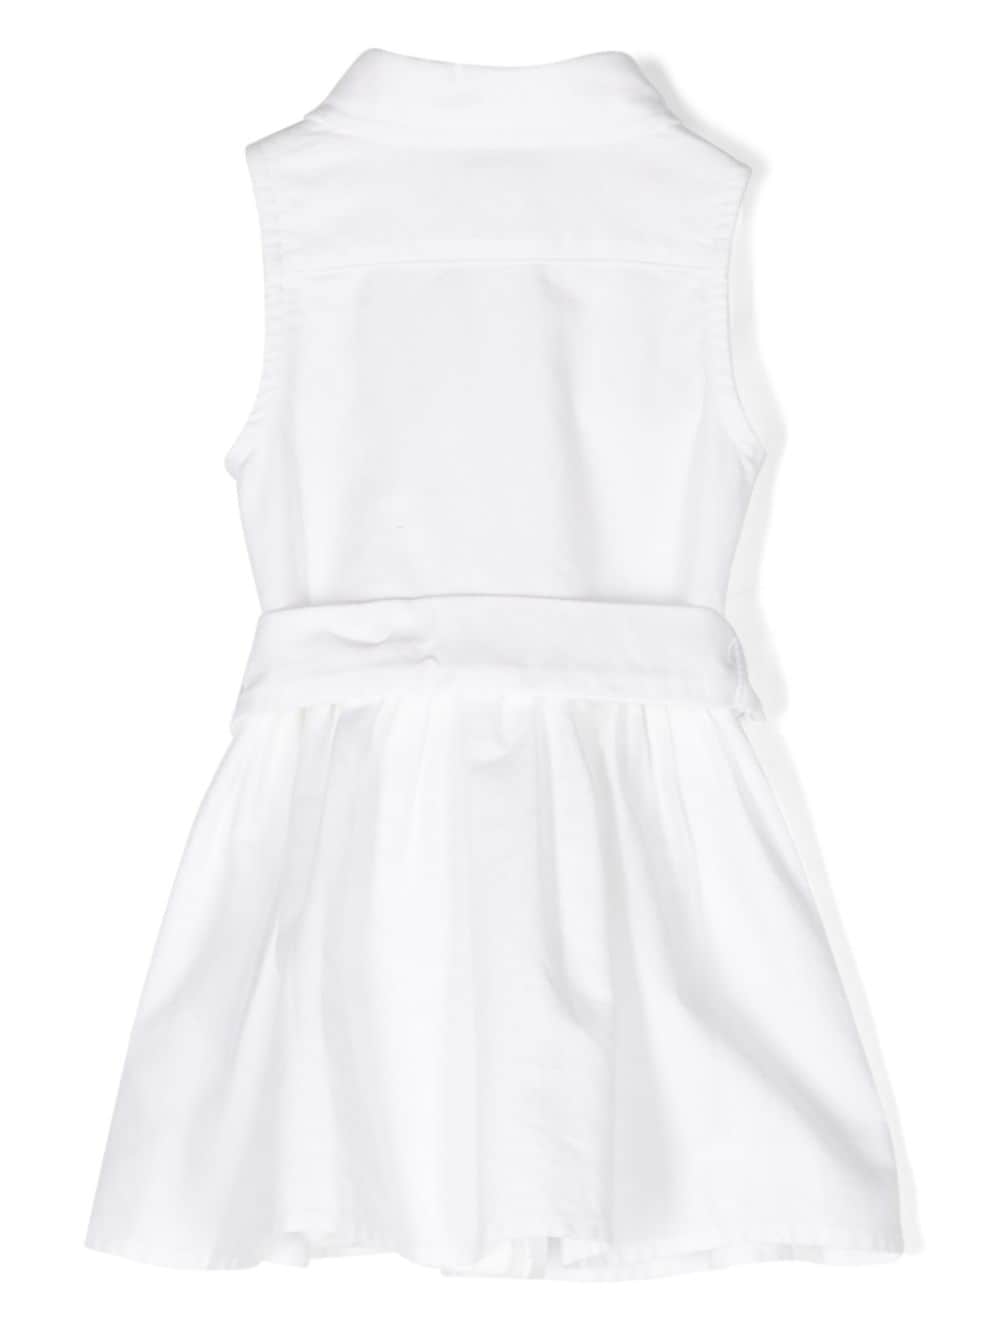 abito bianco neonata